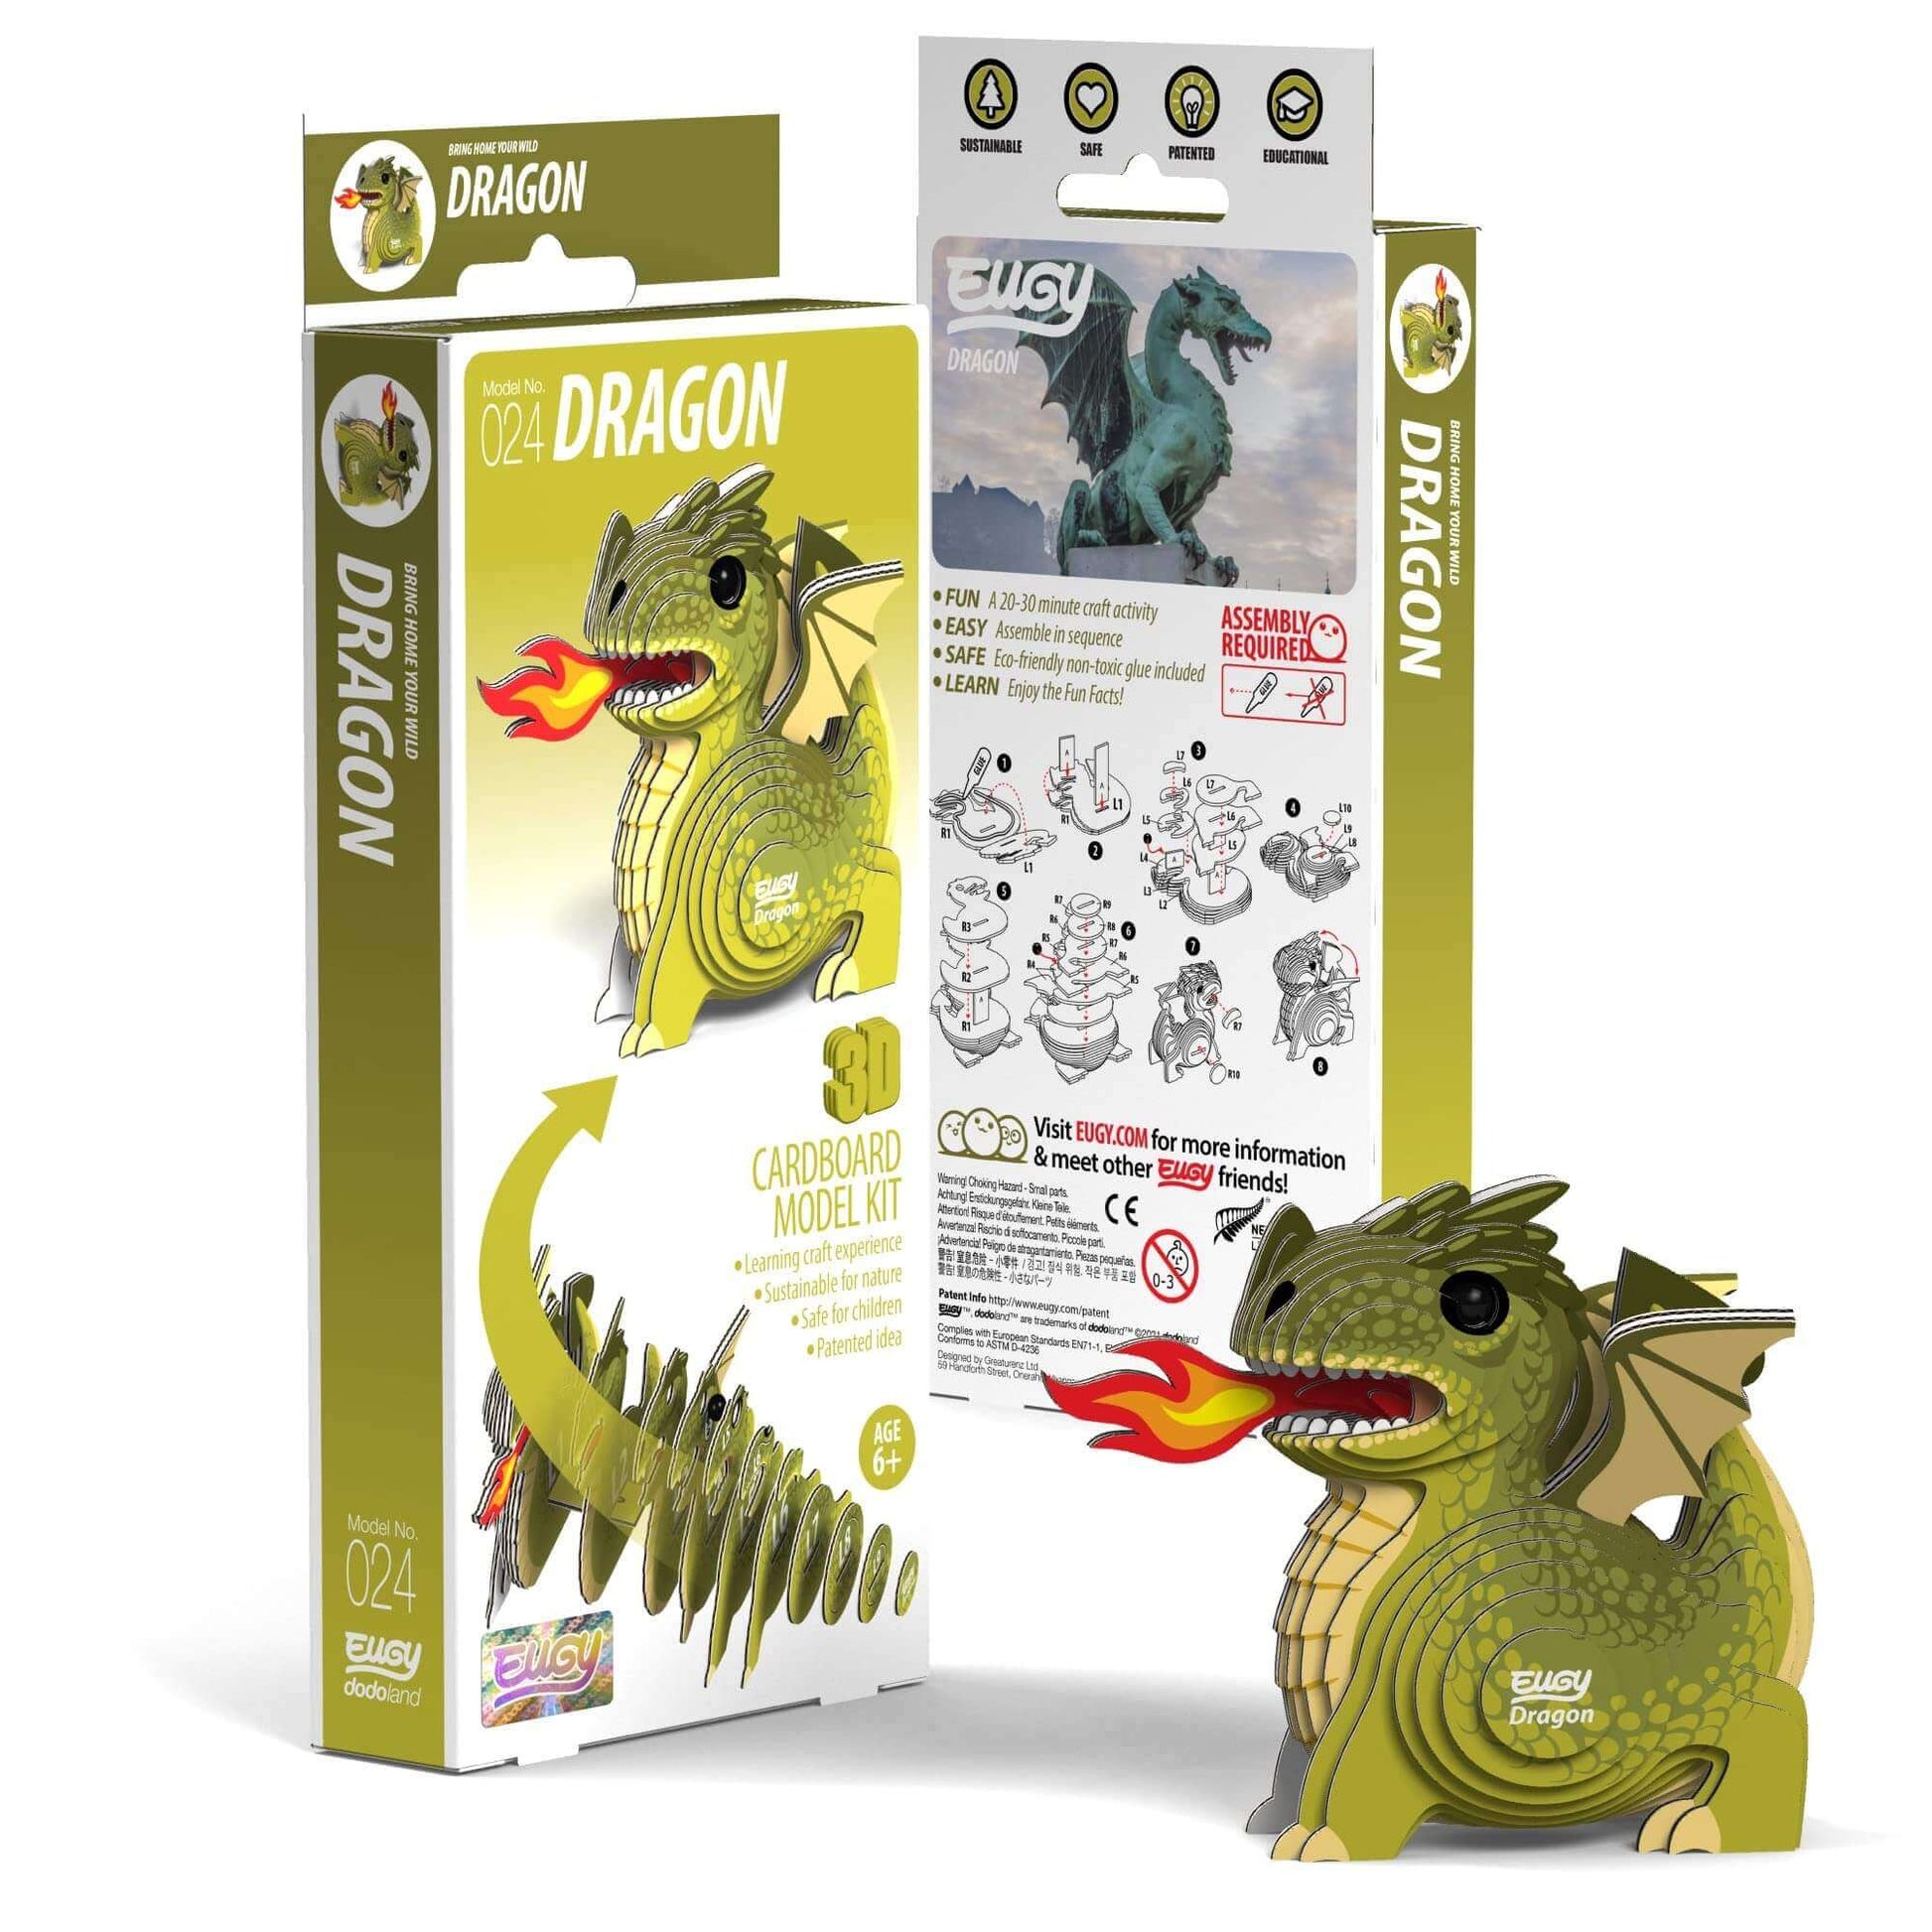 Dragon Eugy, Geotoys, eco-friendly Toys, Mountain Kids Toys